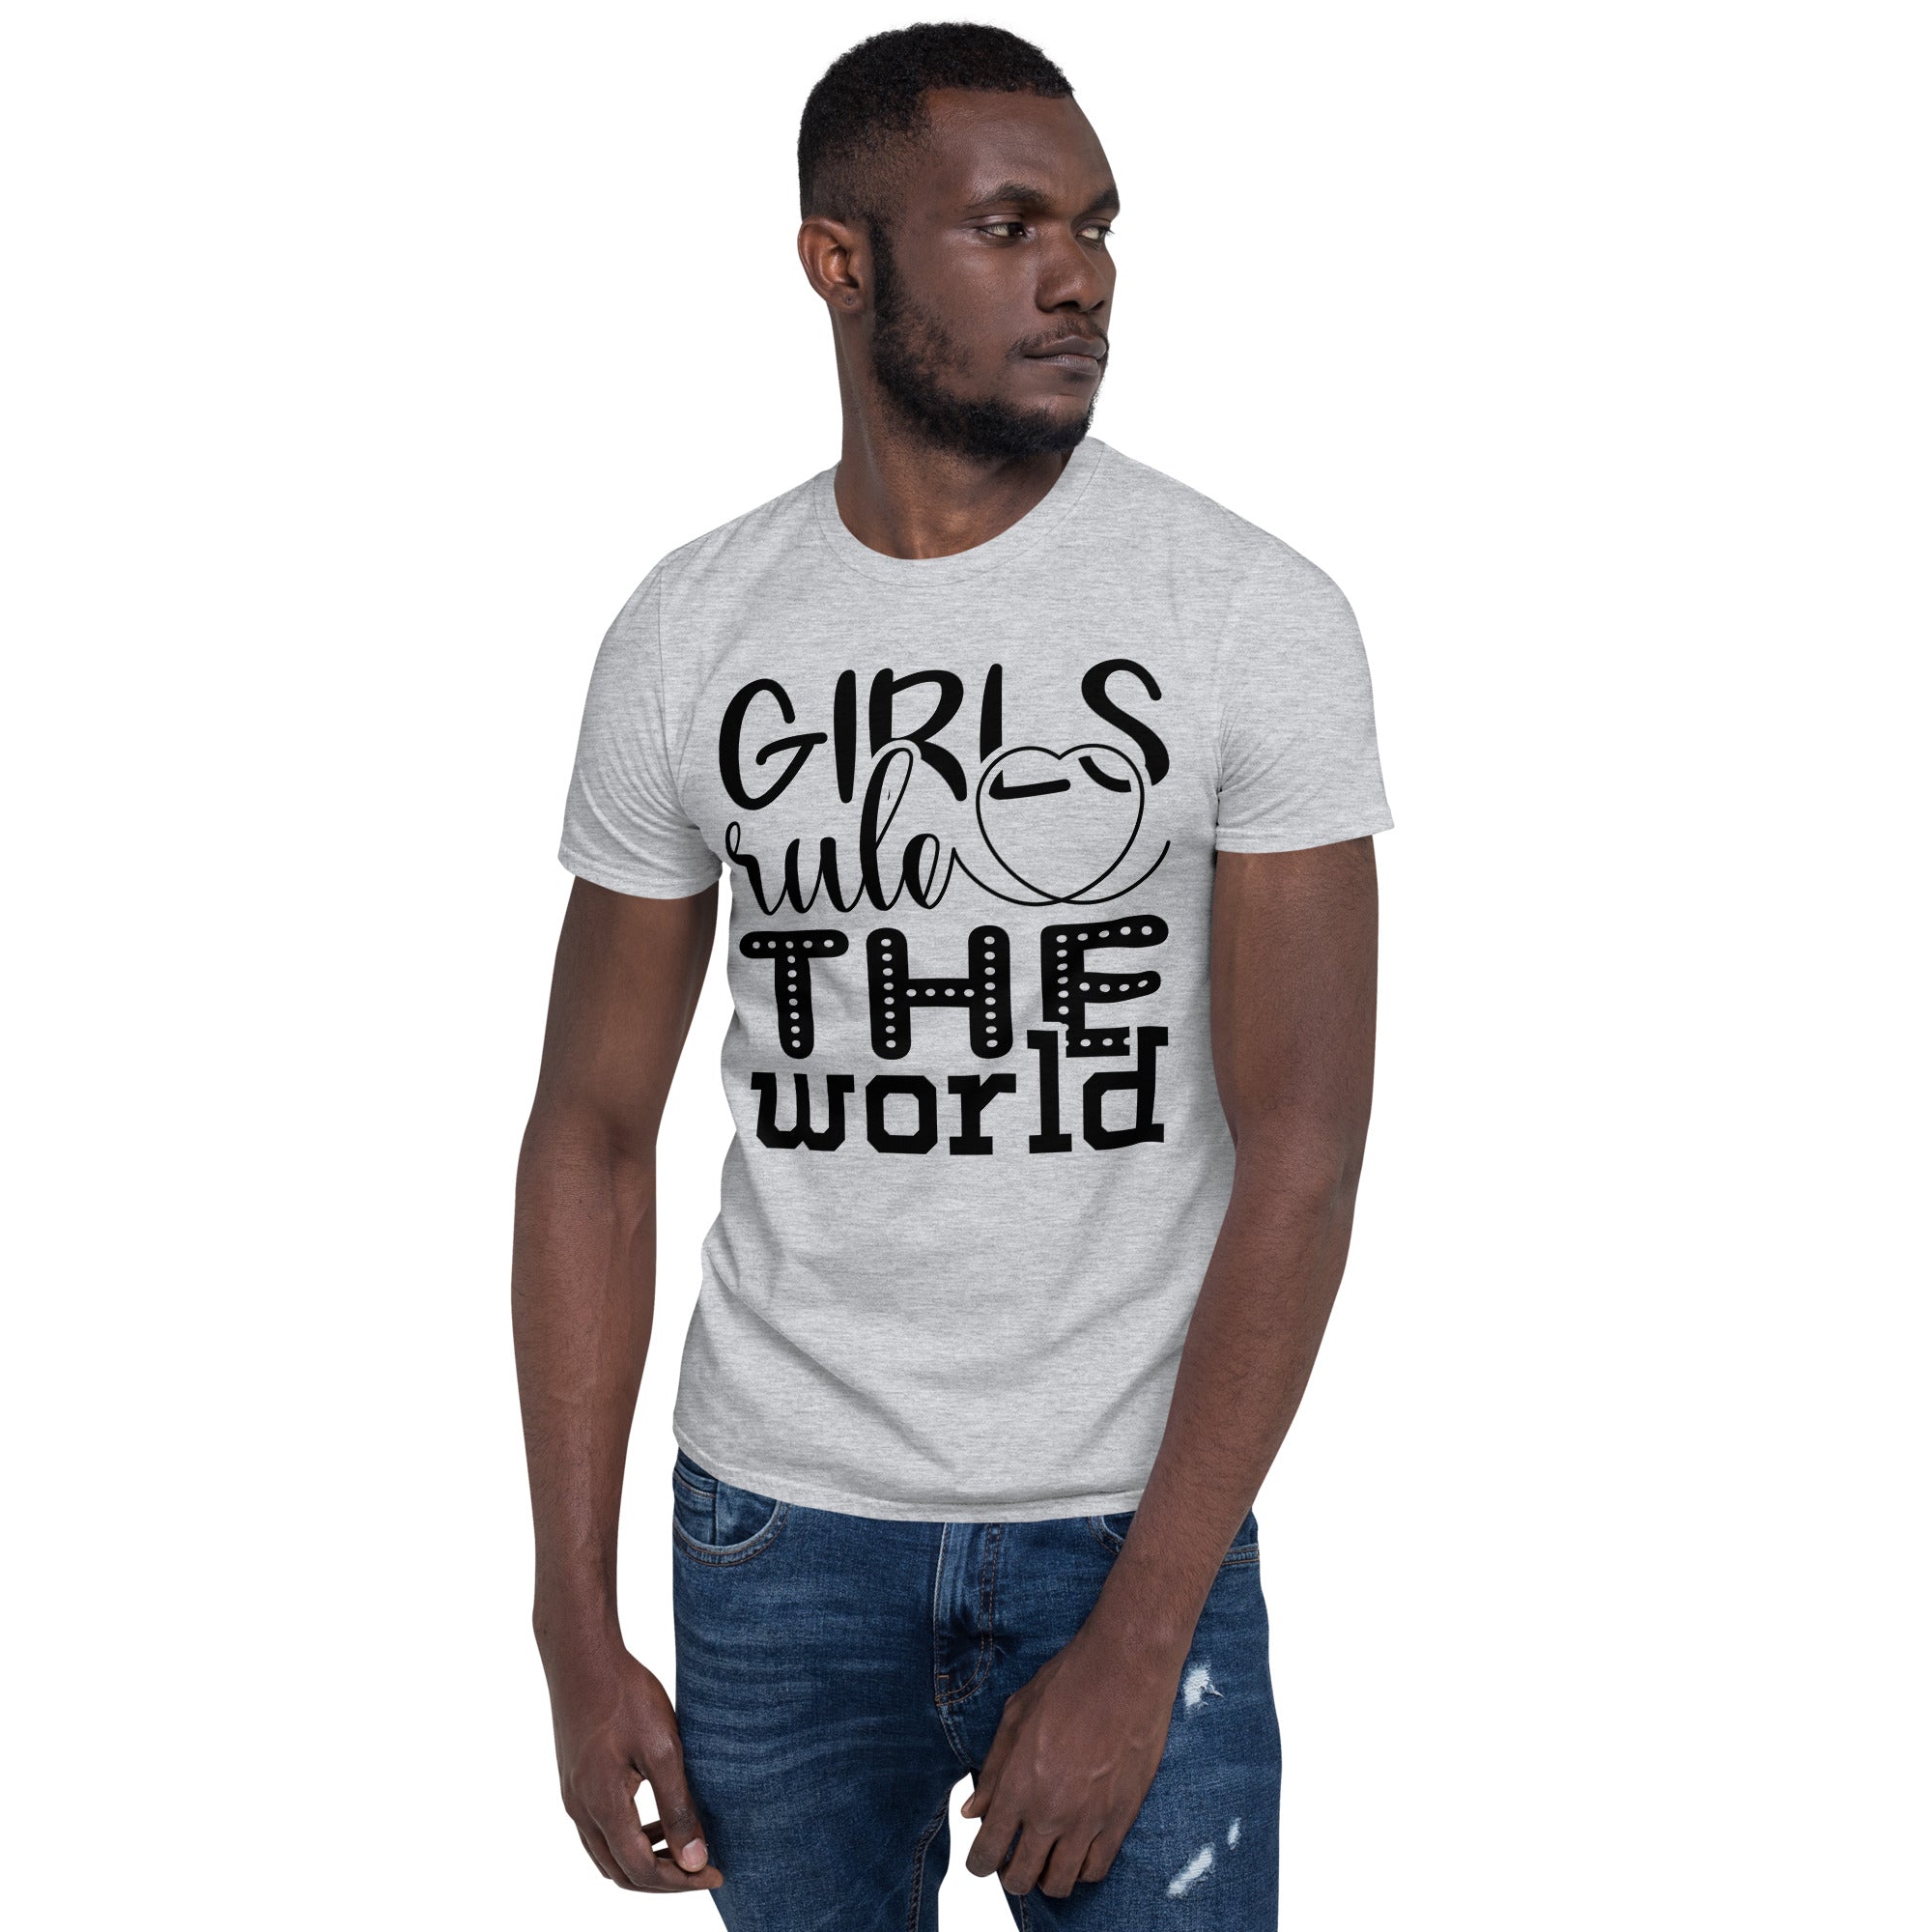 Girl Power - Short-Sleeve Unisex T-Shirt